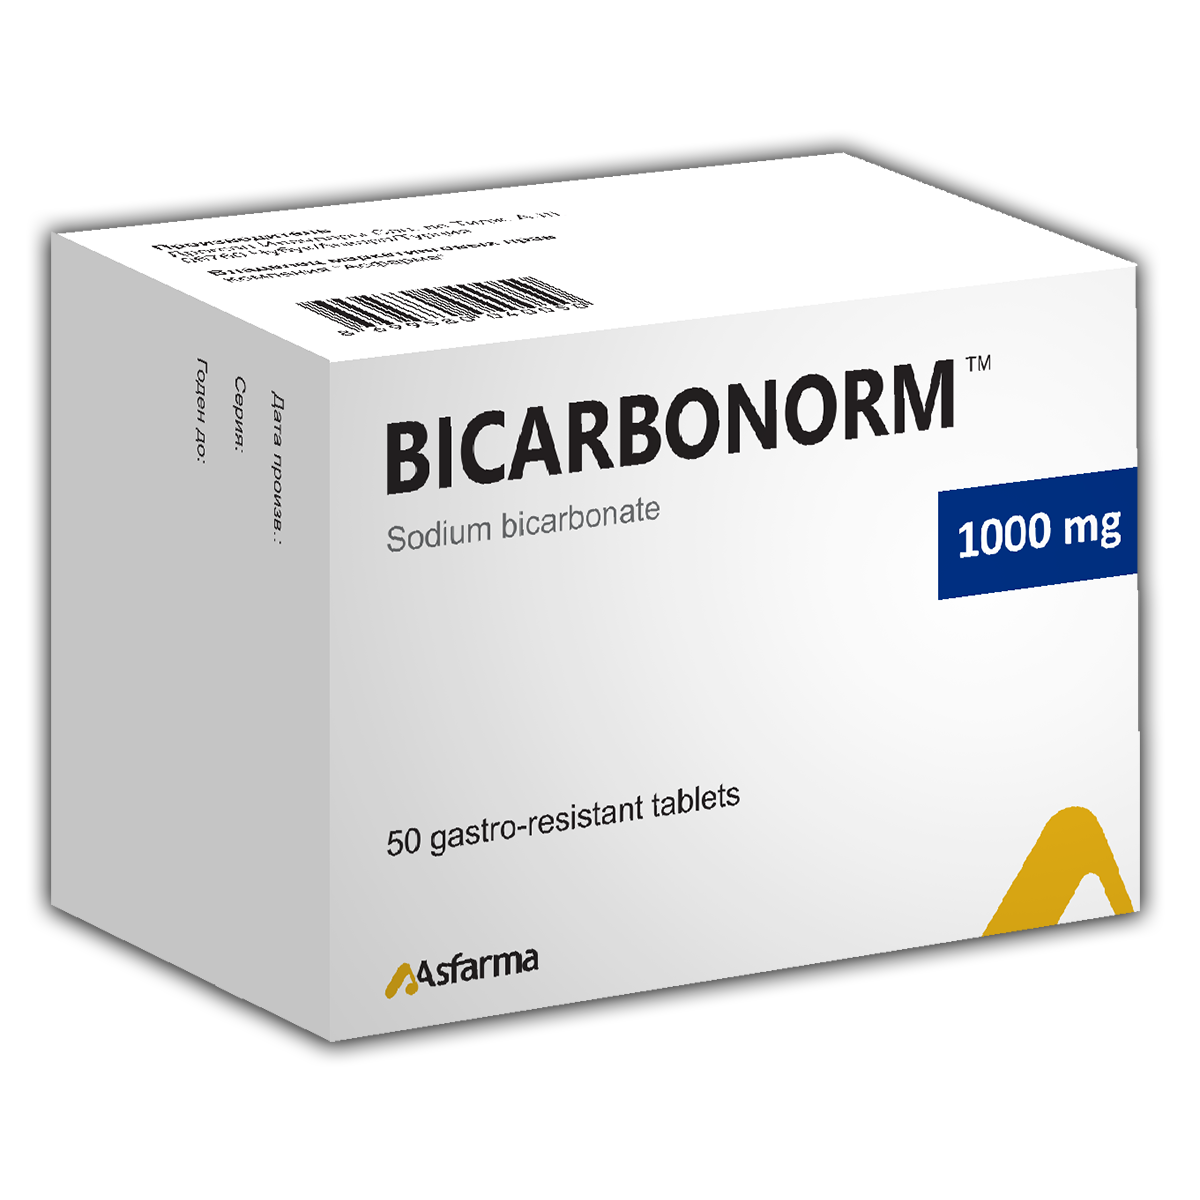 ბიკარბონორმი / Bicarbonorm